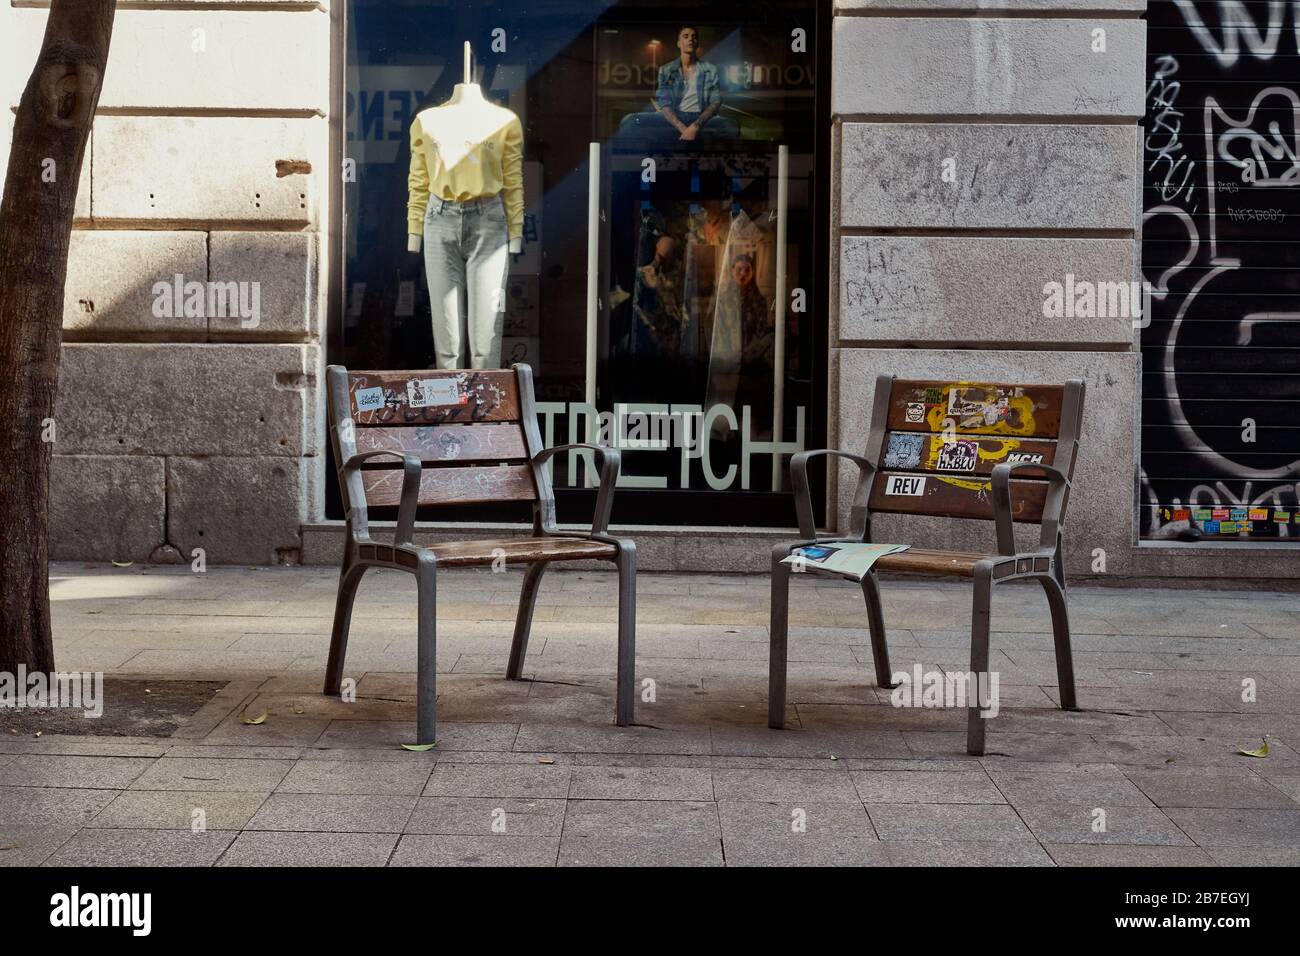 Deux chaises vides, l'une avec un journal abandonné dans une rue commerçante normalement occupée (Calle Fuencarral) Madrid. État d'urgence du virus Corona Banque D'Images